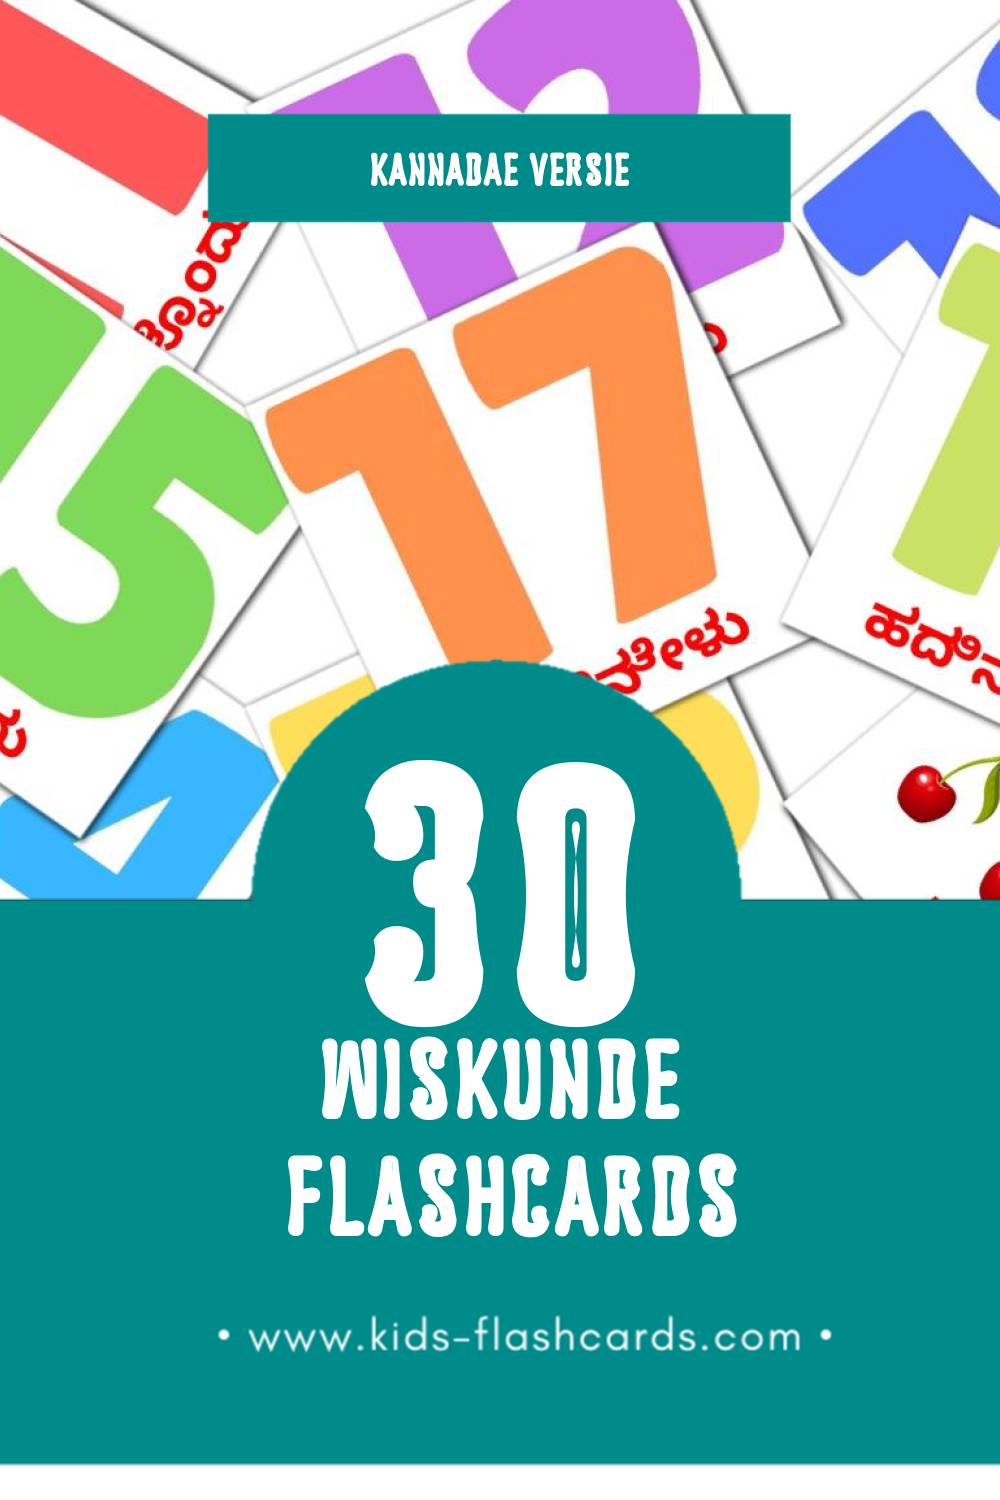 Visuele ಗಣಿತ Flashcards voor Kleuters (30 kaarten in het Kannada)